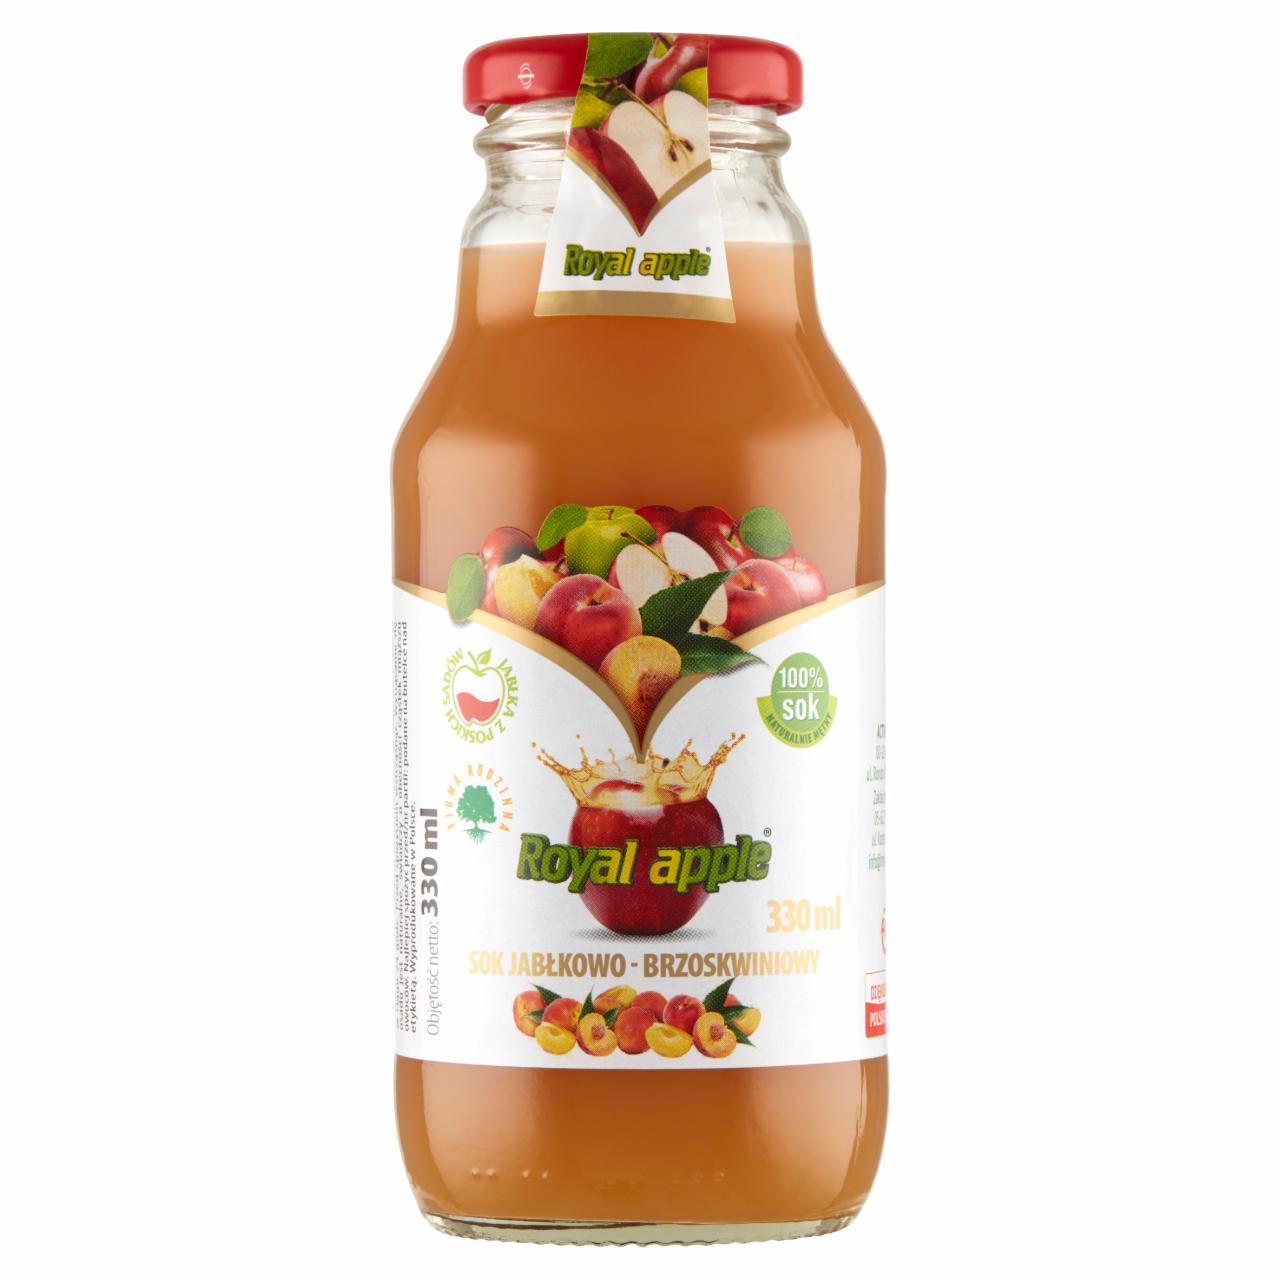 Photo - Royal apple Apple-Peach Juice 330 ml